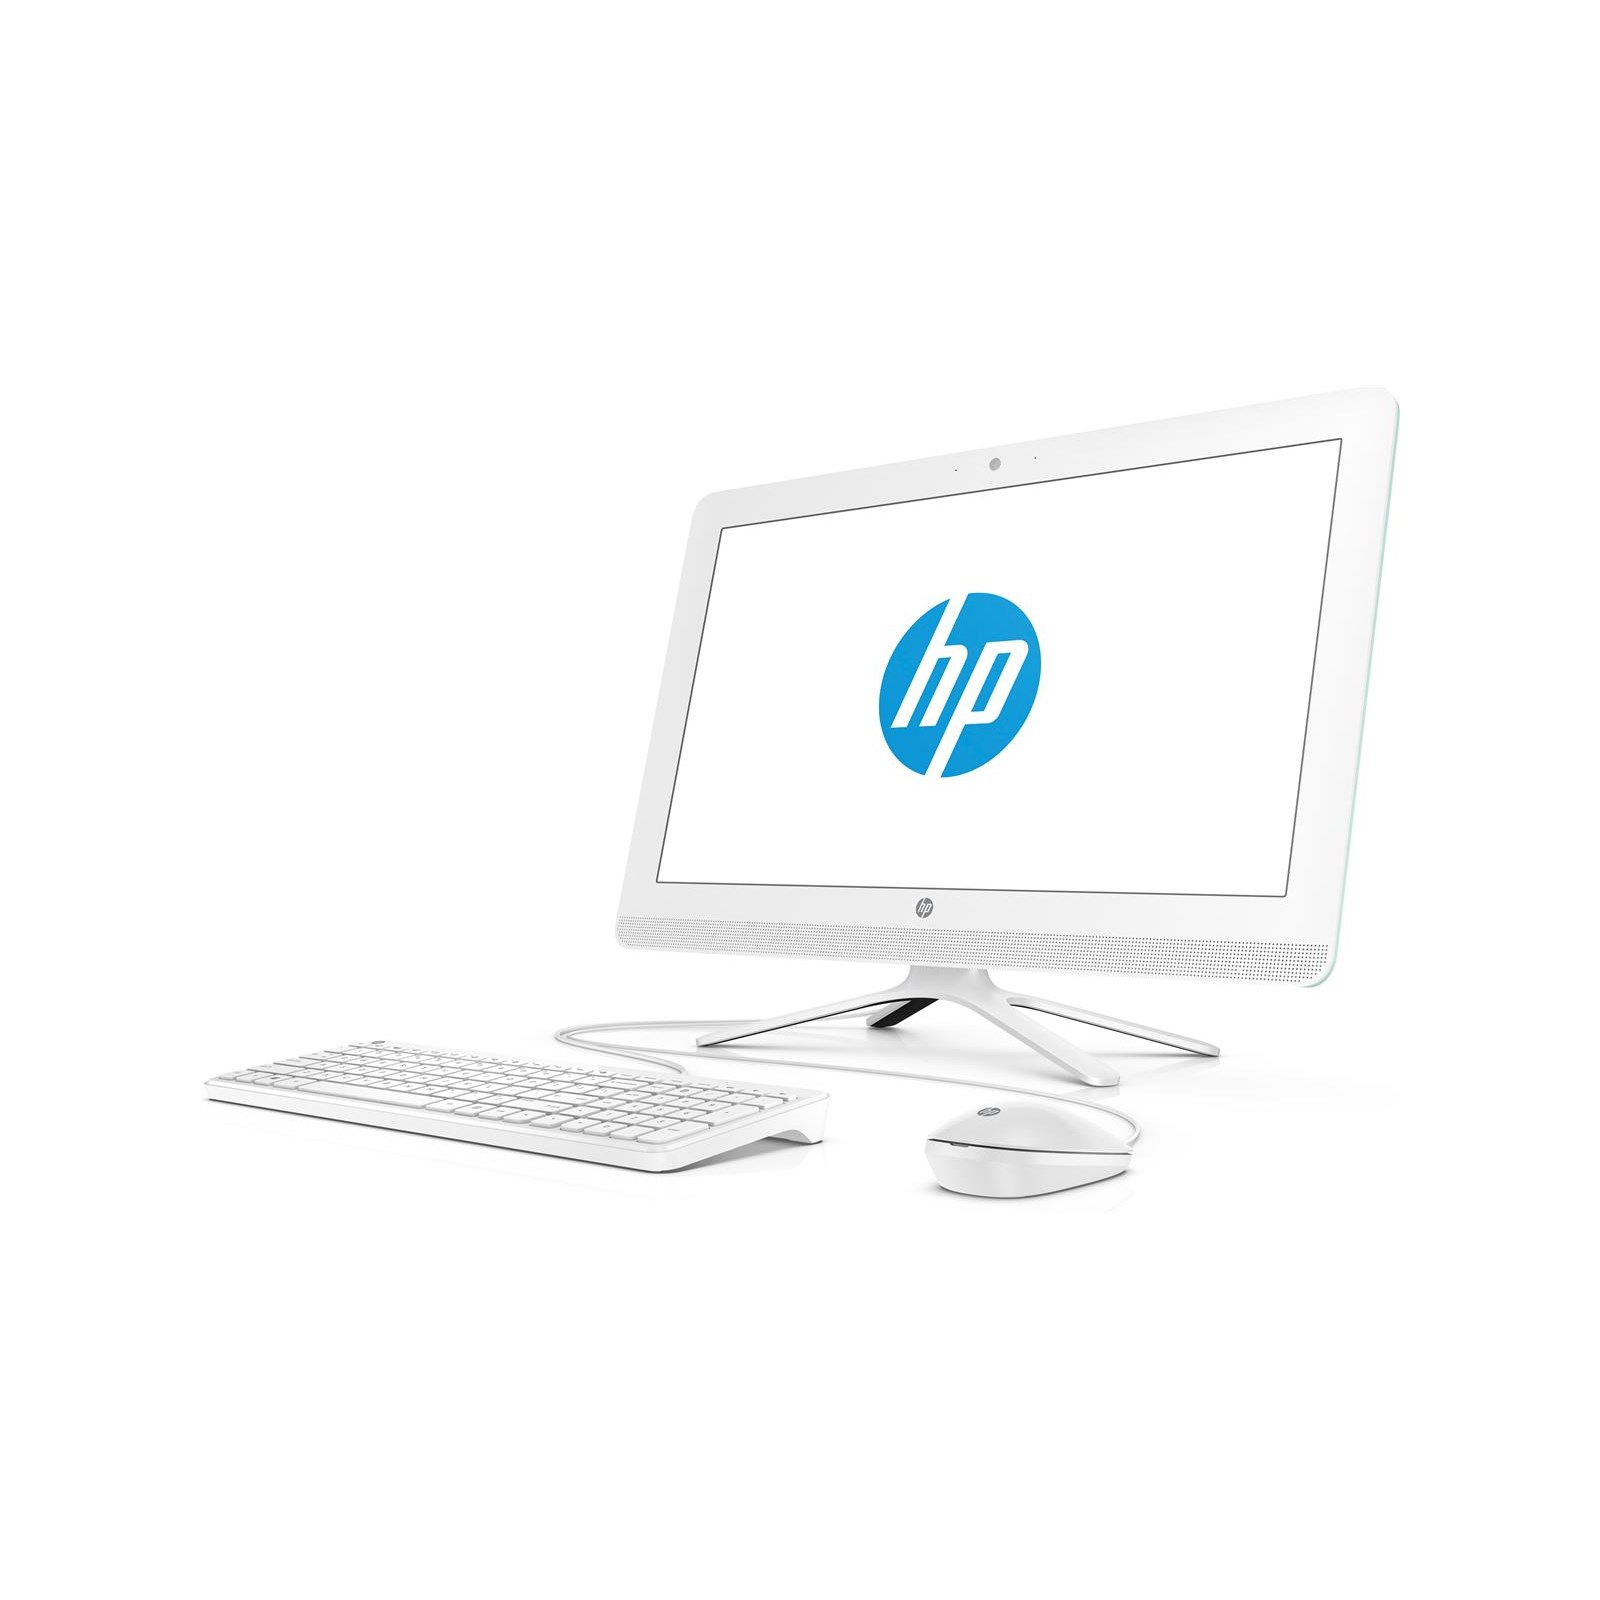 HP 22-b021na (21.5 inch) All-in-One PC Pentium (J3710) 1.6GHz 8GB 1TB